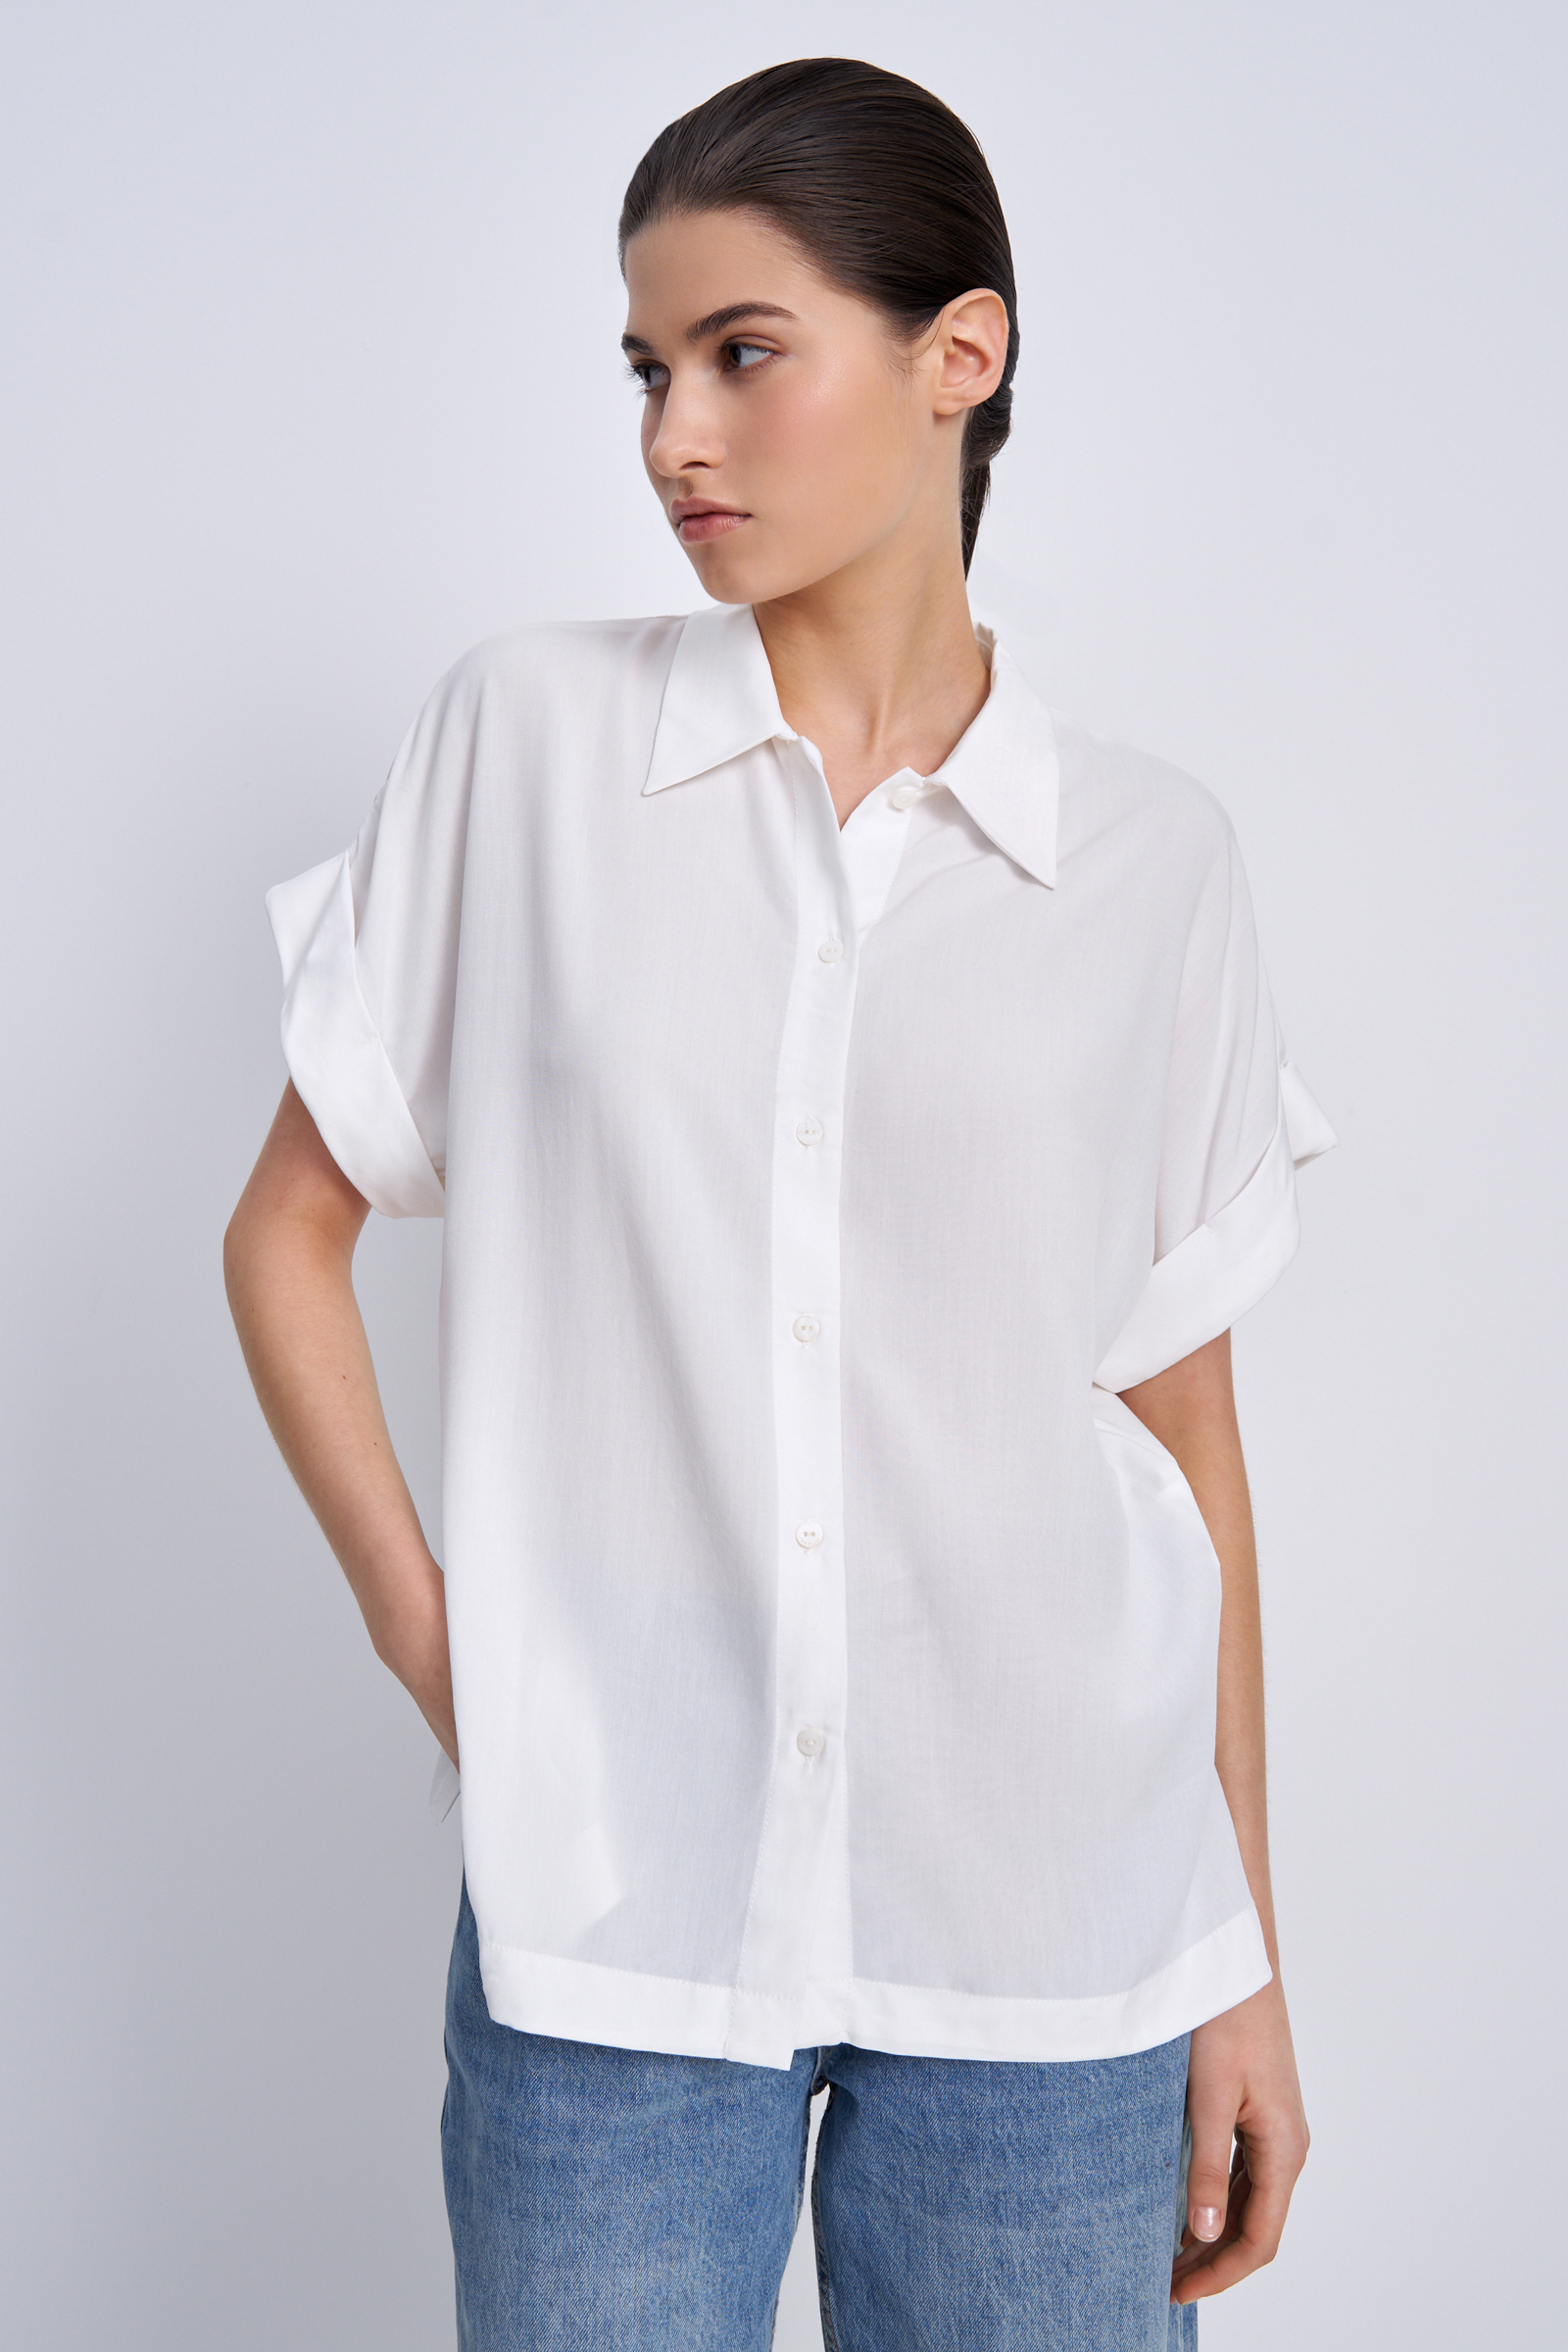 Рубашка женская Finn Flare BAS-10041 белая L